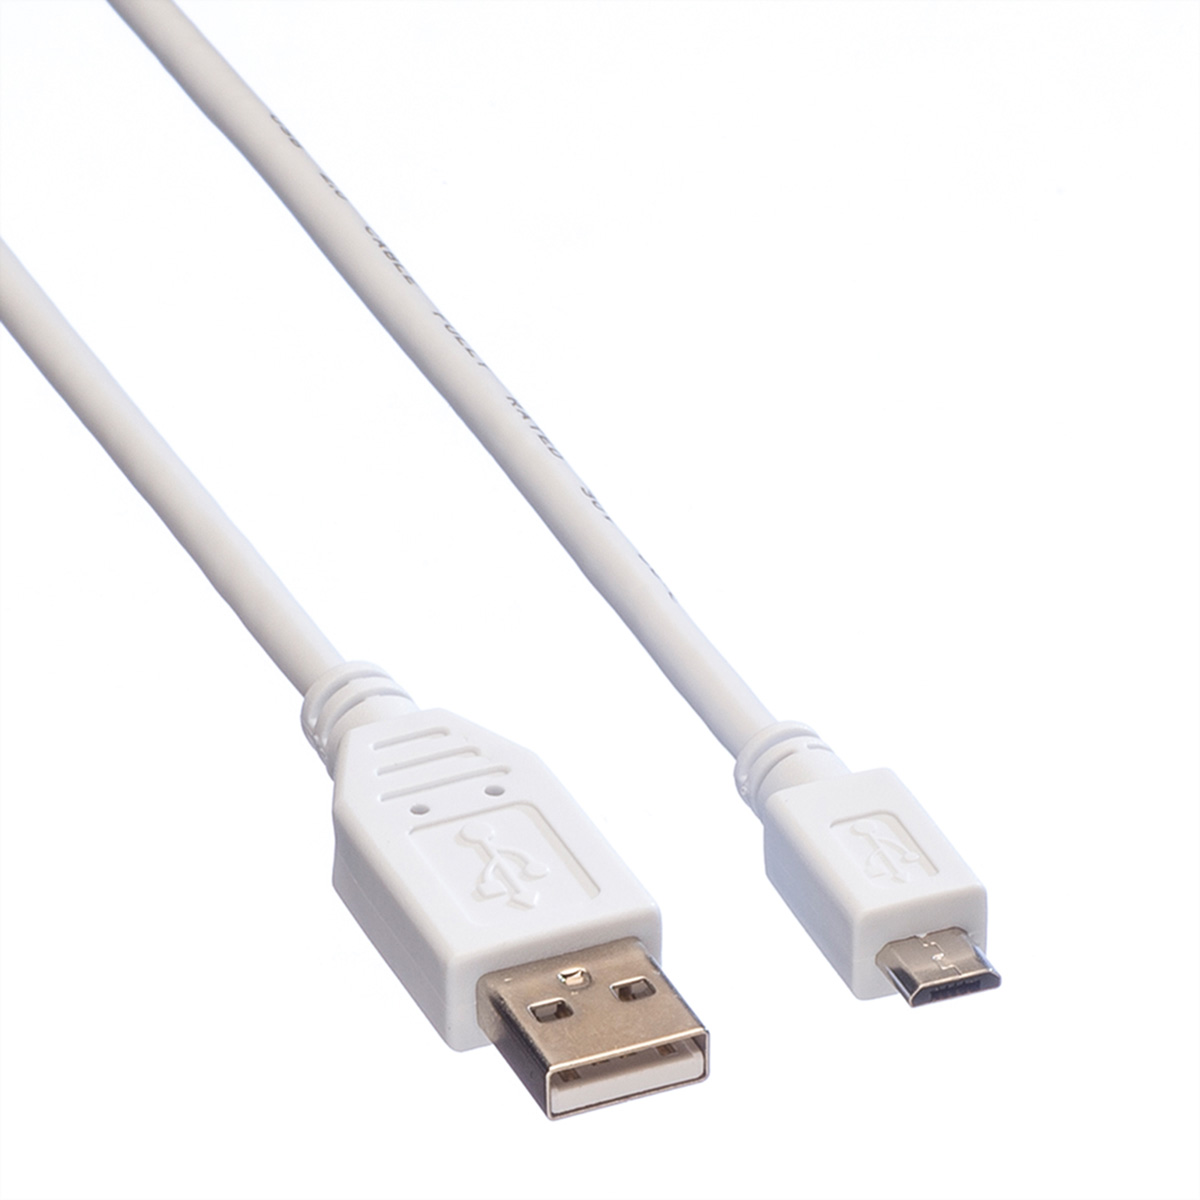 Kabel 2.0 Kabel USB USB Micro VALUE 2.0